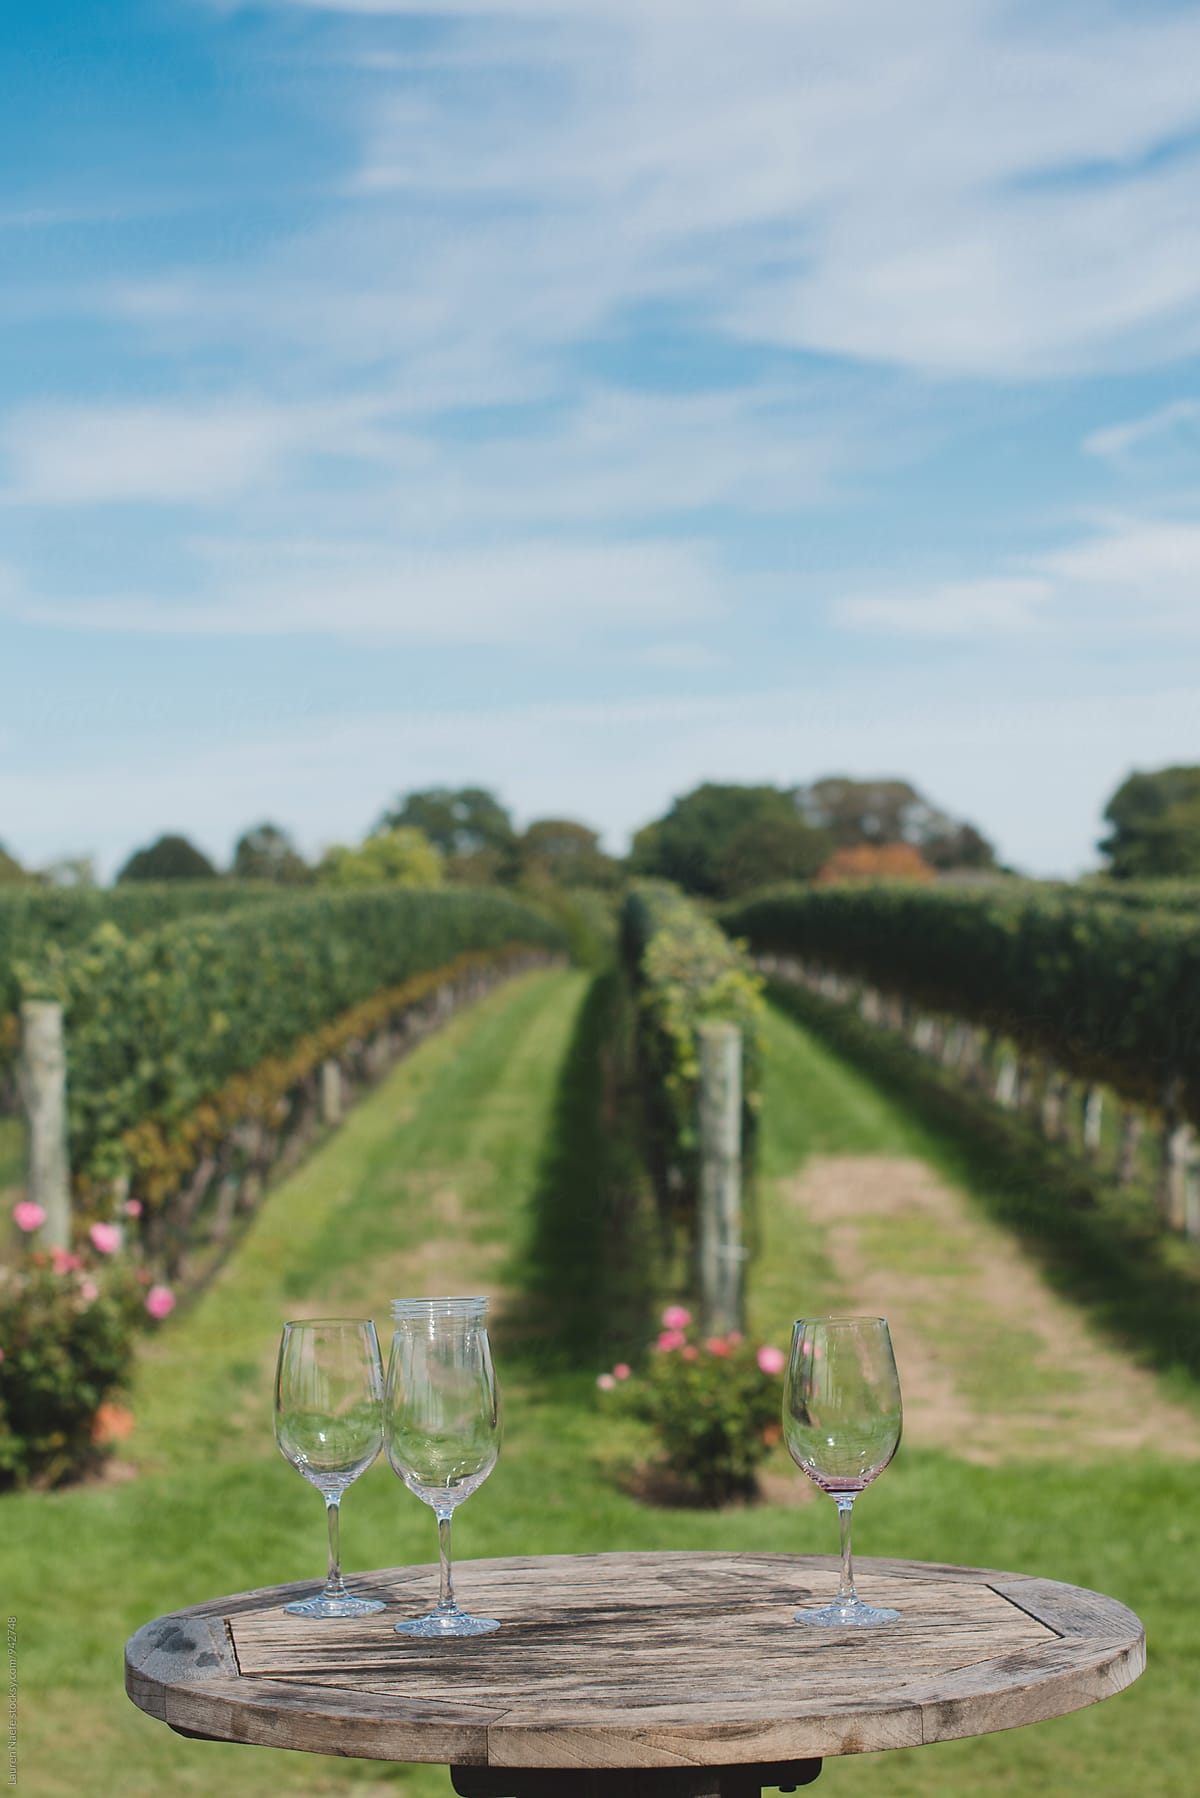 Wine glasses at vineyard